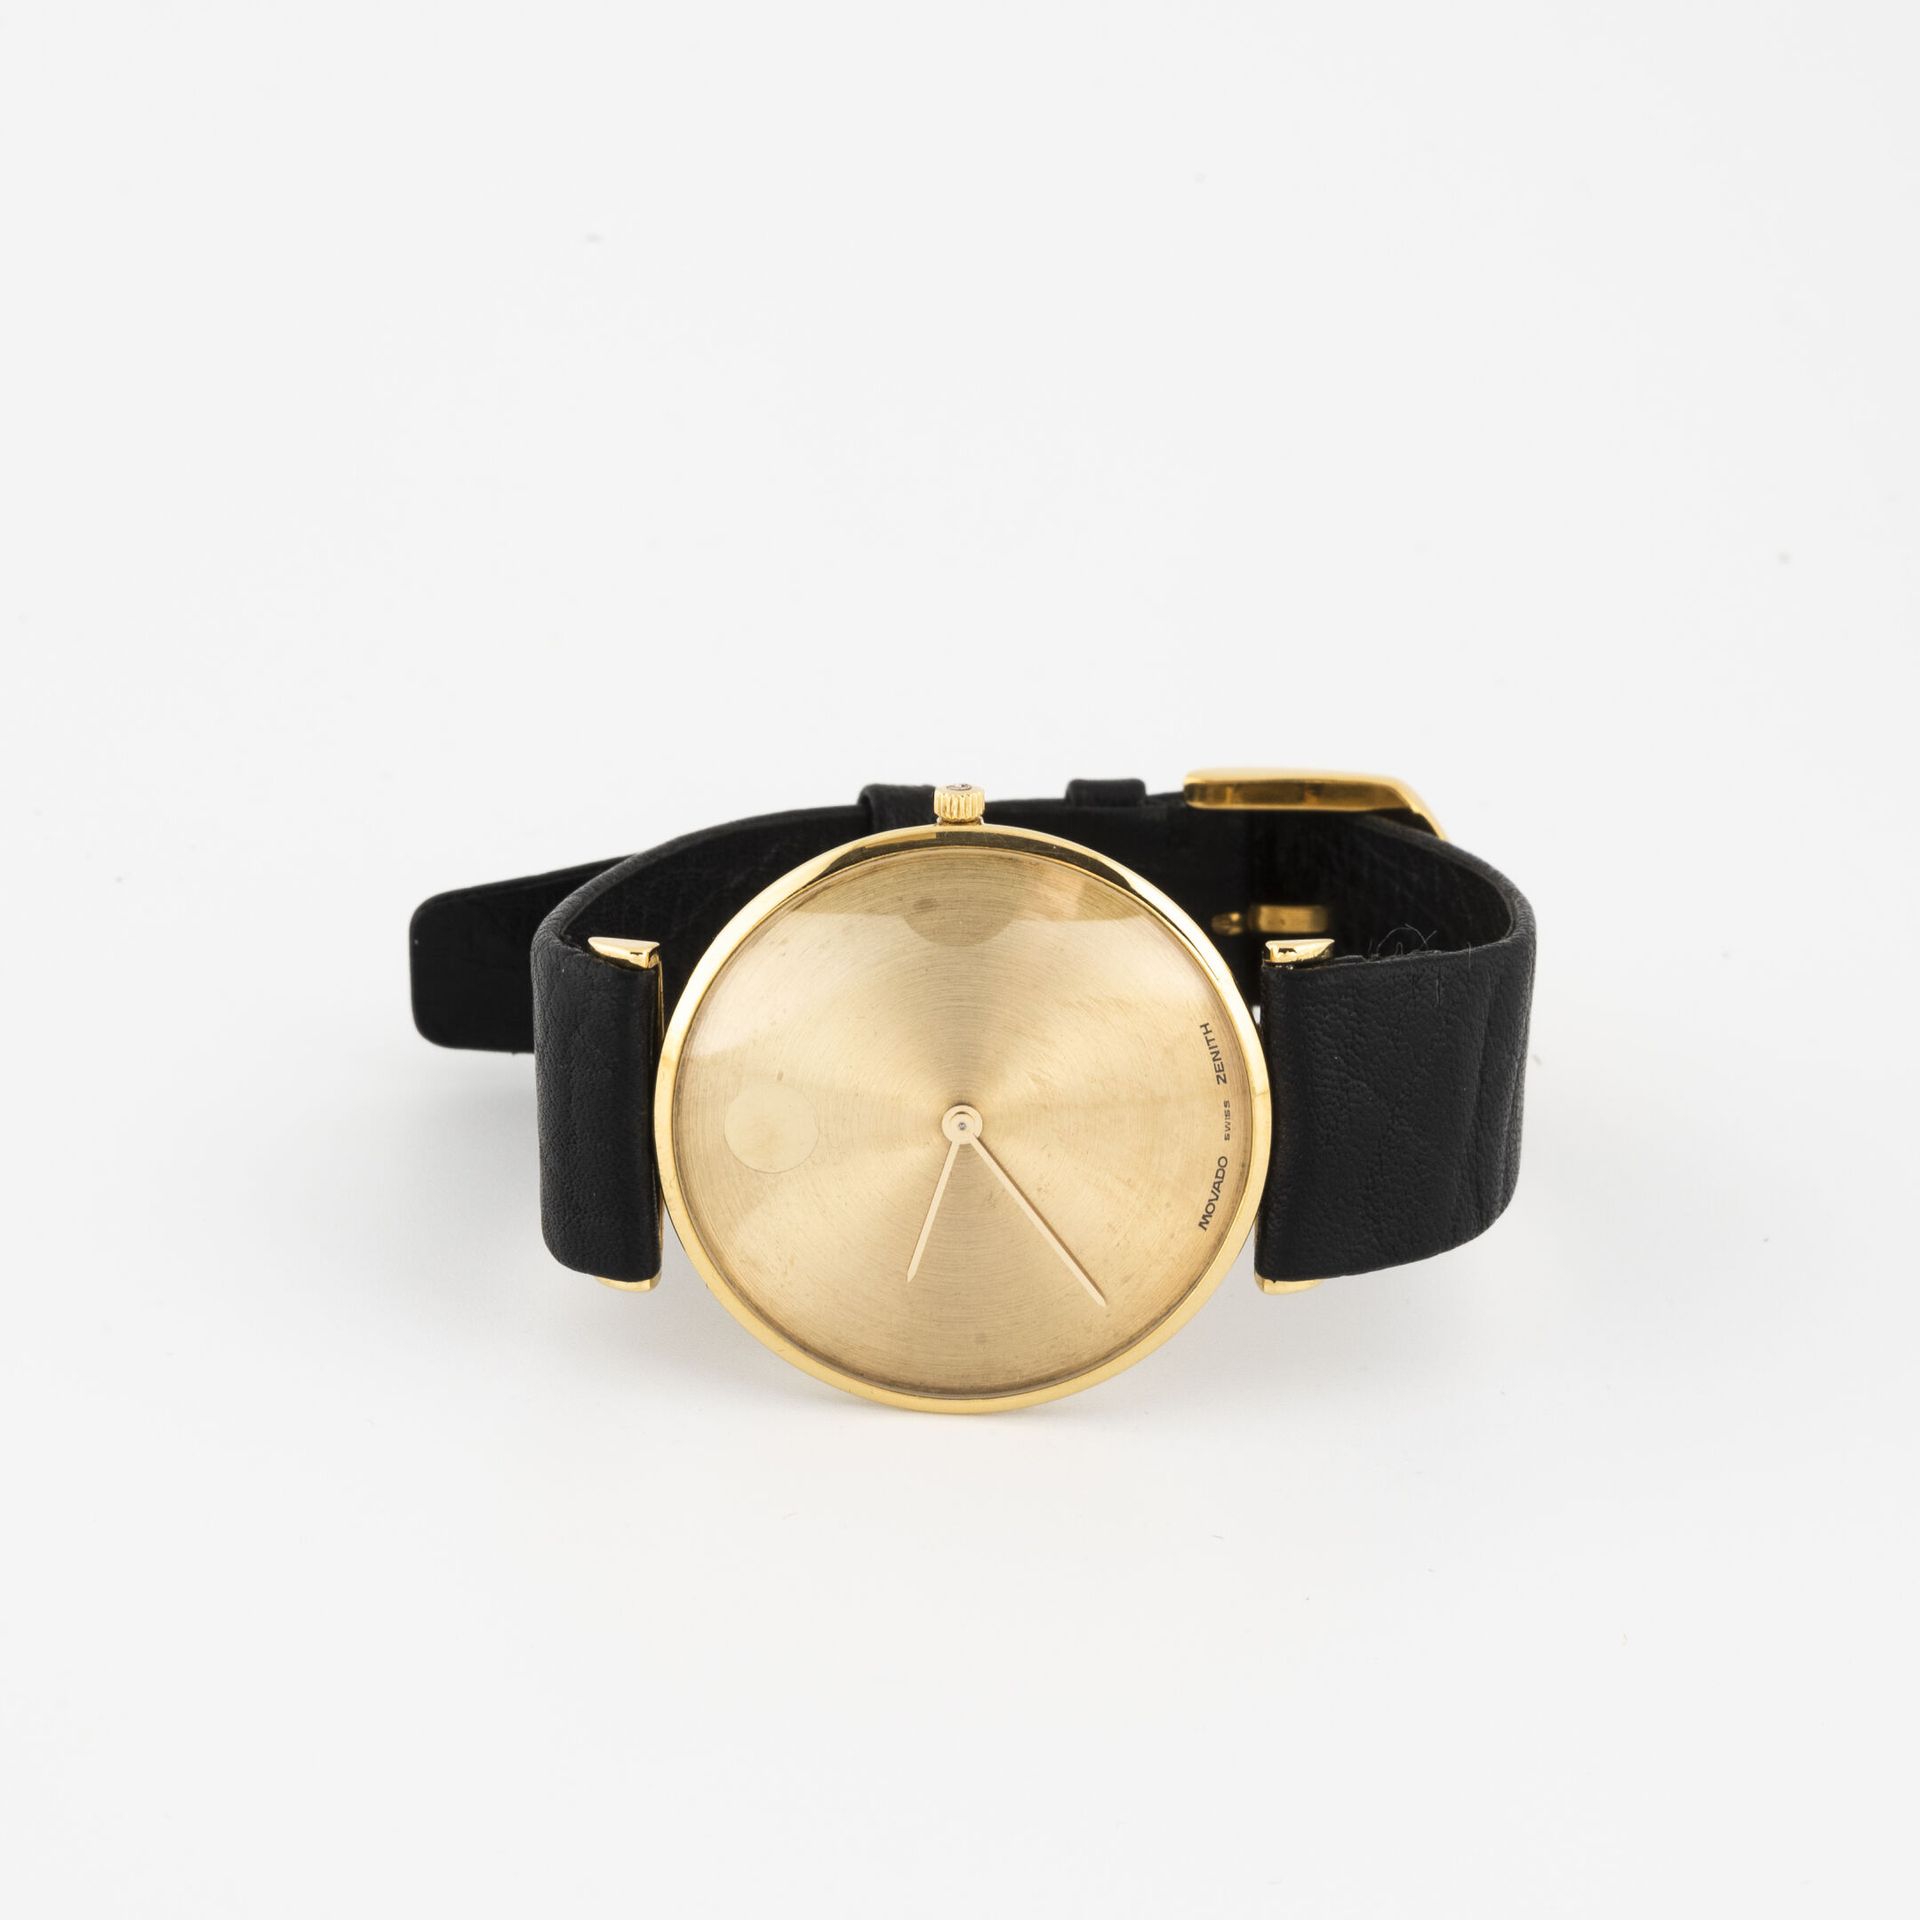 MOVADO pour Zenith 男士腕表。

黄金圆形表壳（750

金色背景的表盘，签名。

推测为手动上弦的机械机芯。

黑色皮革表带。

毛重：31&hellip;